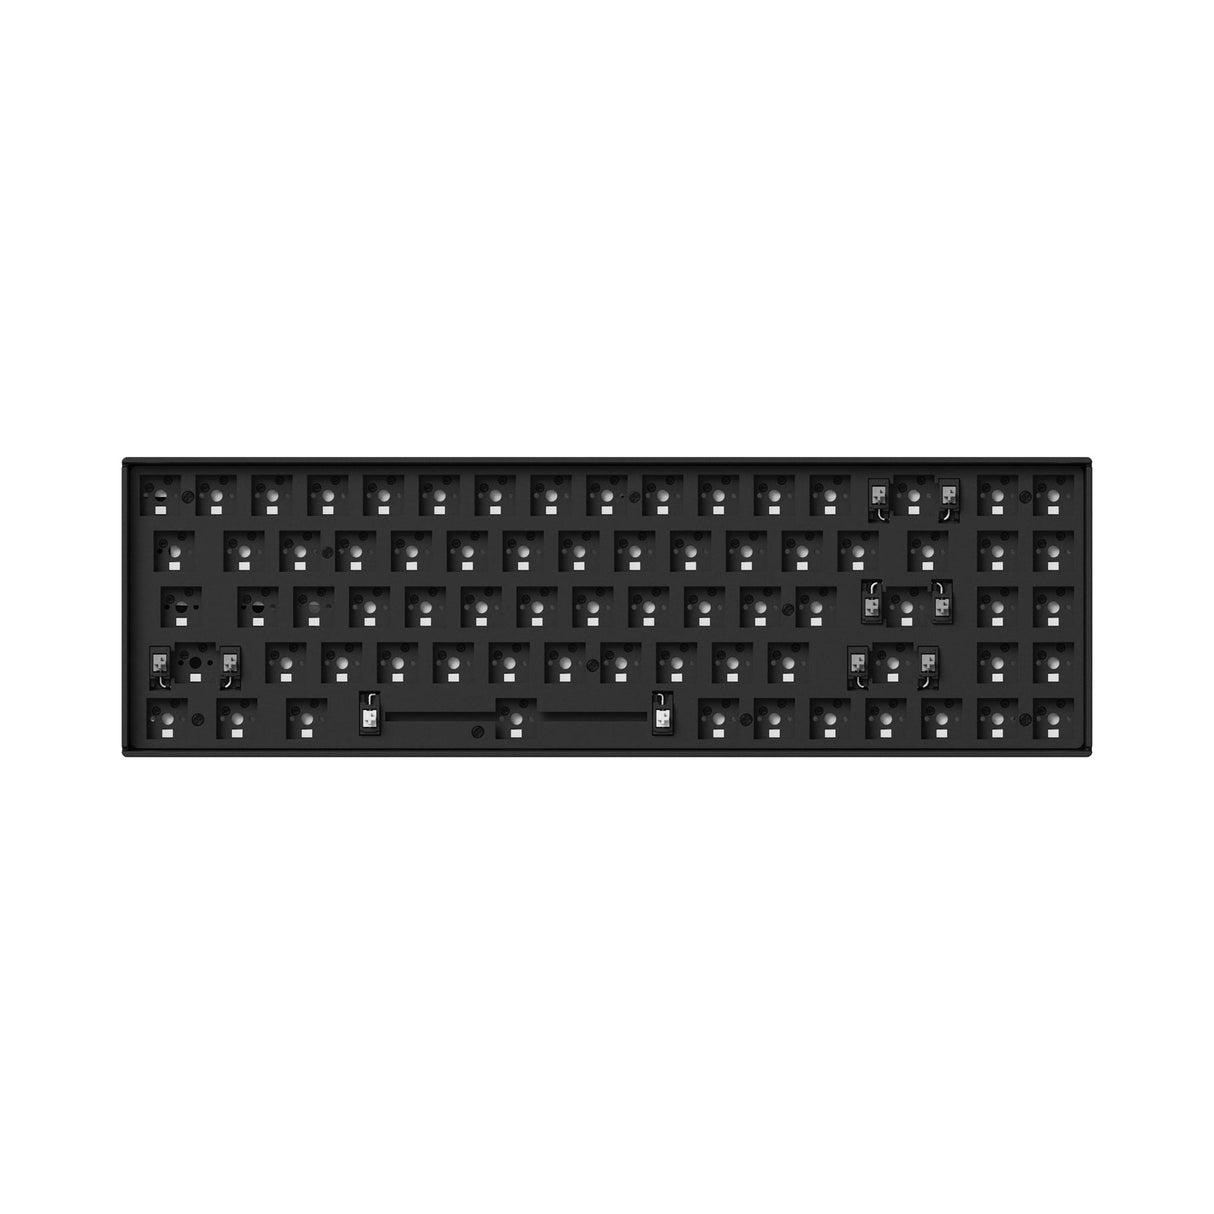 Keychron K14 Pro QMK/VIA Drahtlose Mechanische Tastatur (US-Layout)